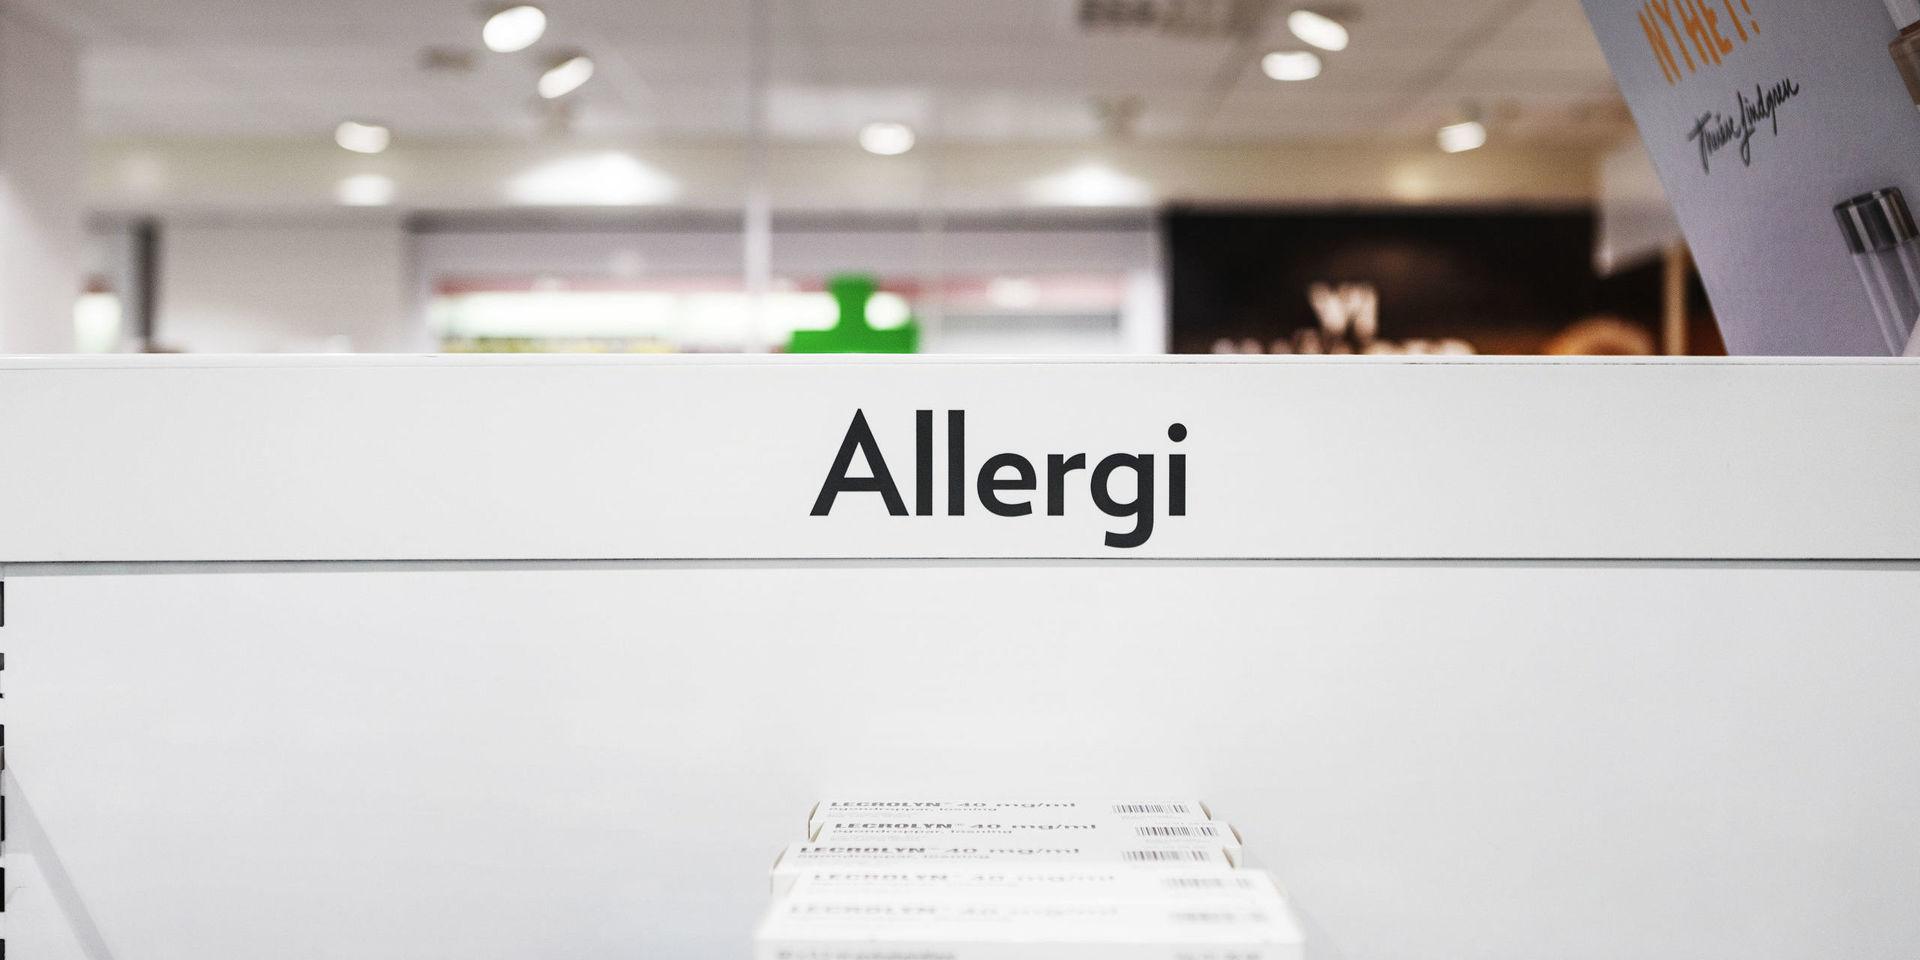 Glöm inte allergimedicinen, om du har allergiska besvär.